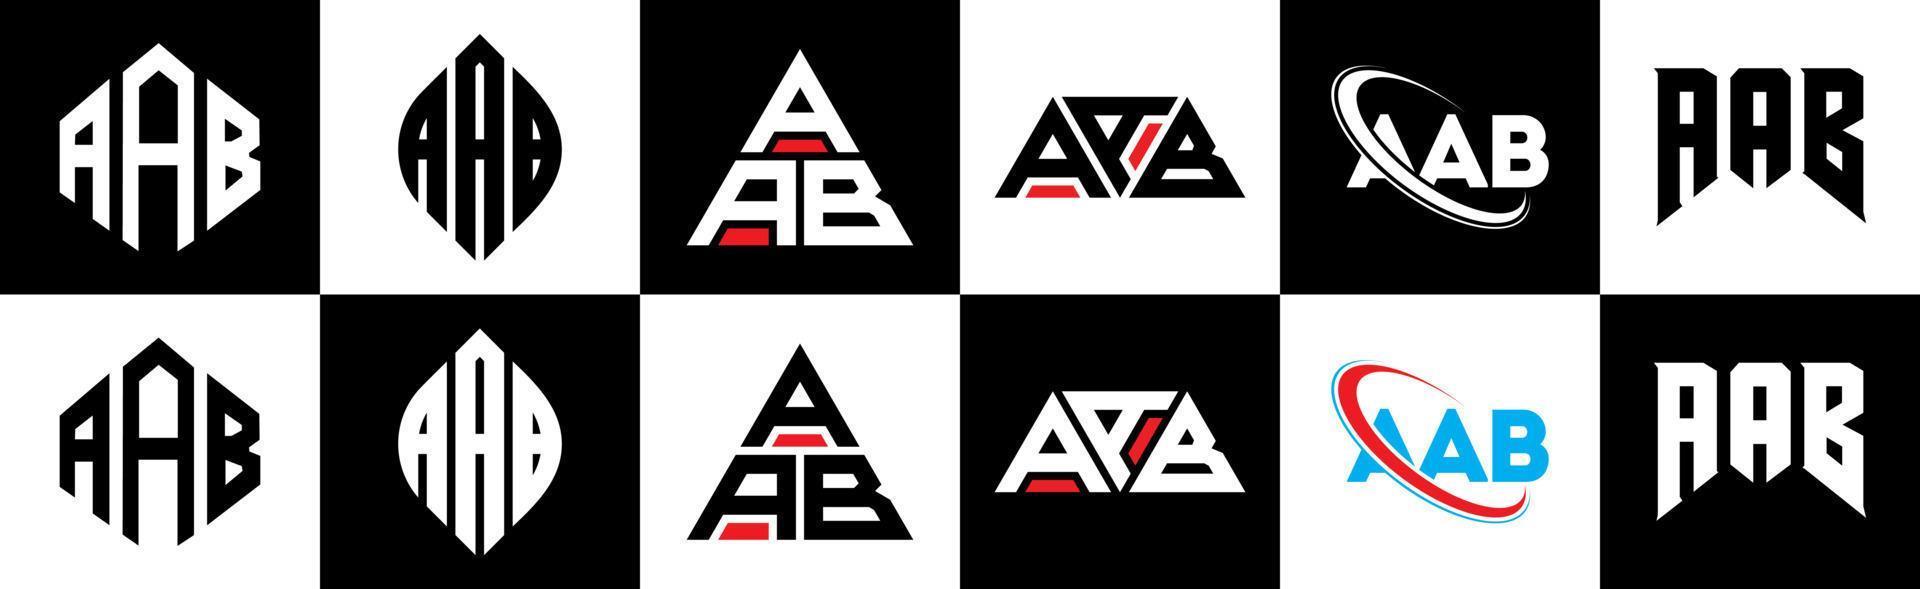 aab-Buchstaben-Logo-Design in sechs Stilen. aab polygon, kreis, dreieck, sechseck, flacher und einfacher stil mit schwarz-weißem buchstabenlogo in einer zeichenfläche. aab minimalistisches und klassisches logo vektor